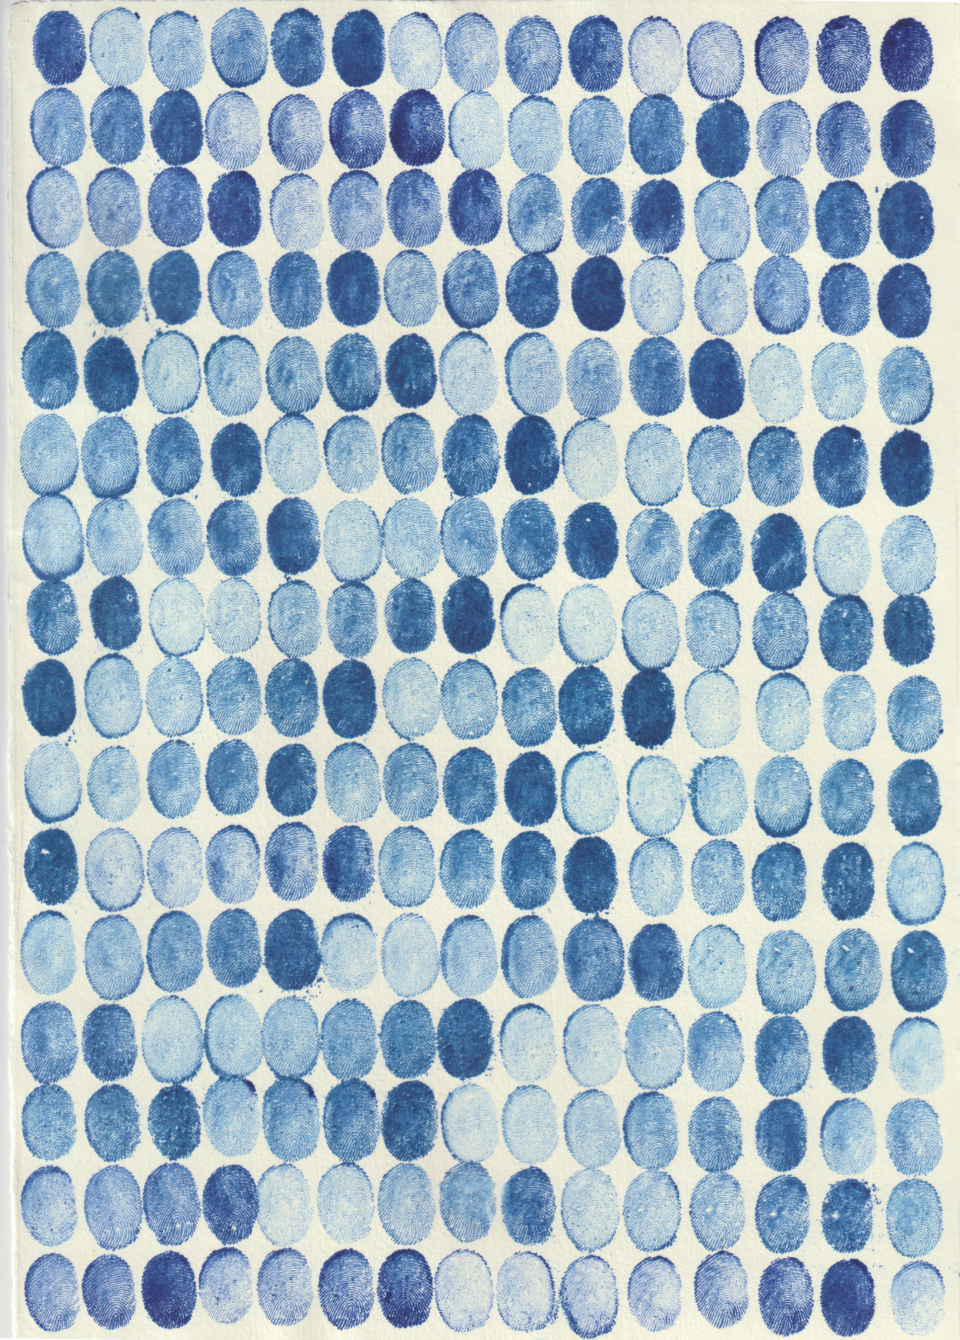 Ohne Titel (Print, Reprint, No. III), 2020, Kupferdruckfarbe auf Bütten / Monotypie, 29,7 x 21 cm